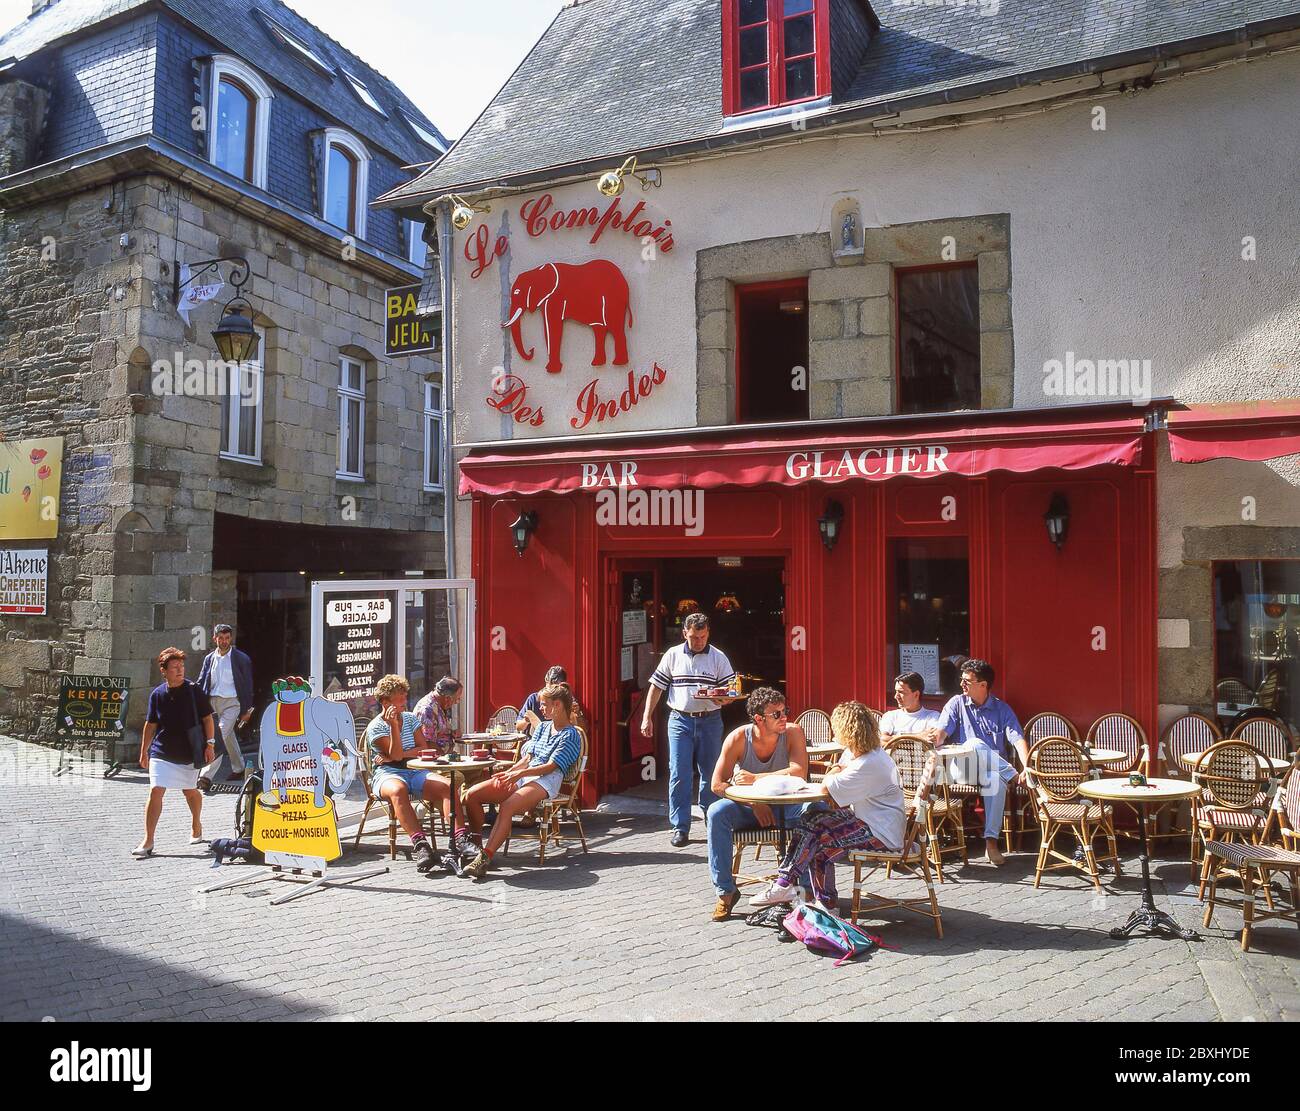 'Le Comptoir des Indes' restaurant, Rue des Augustins, Lannion, Côtes-d'Armor, Brittany, France Stock Photo